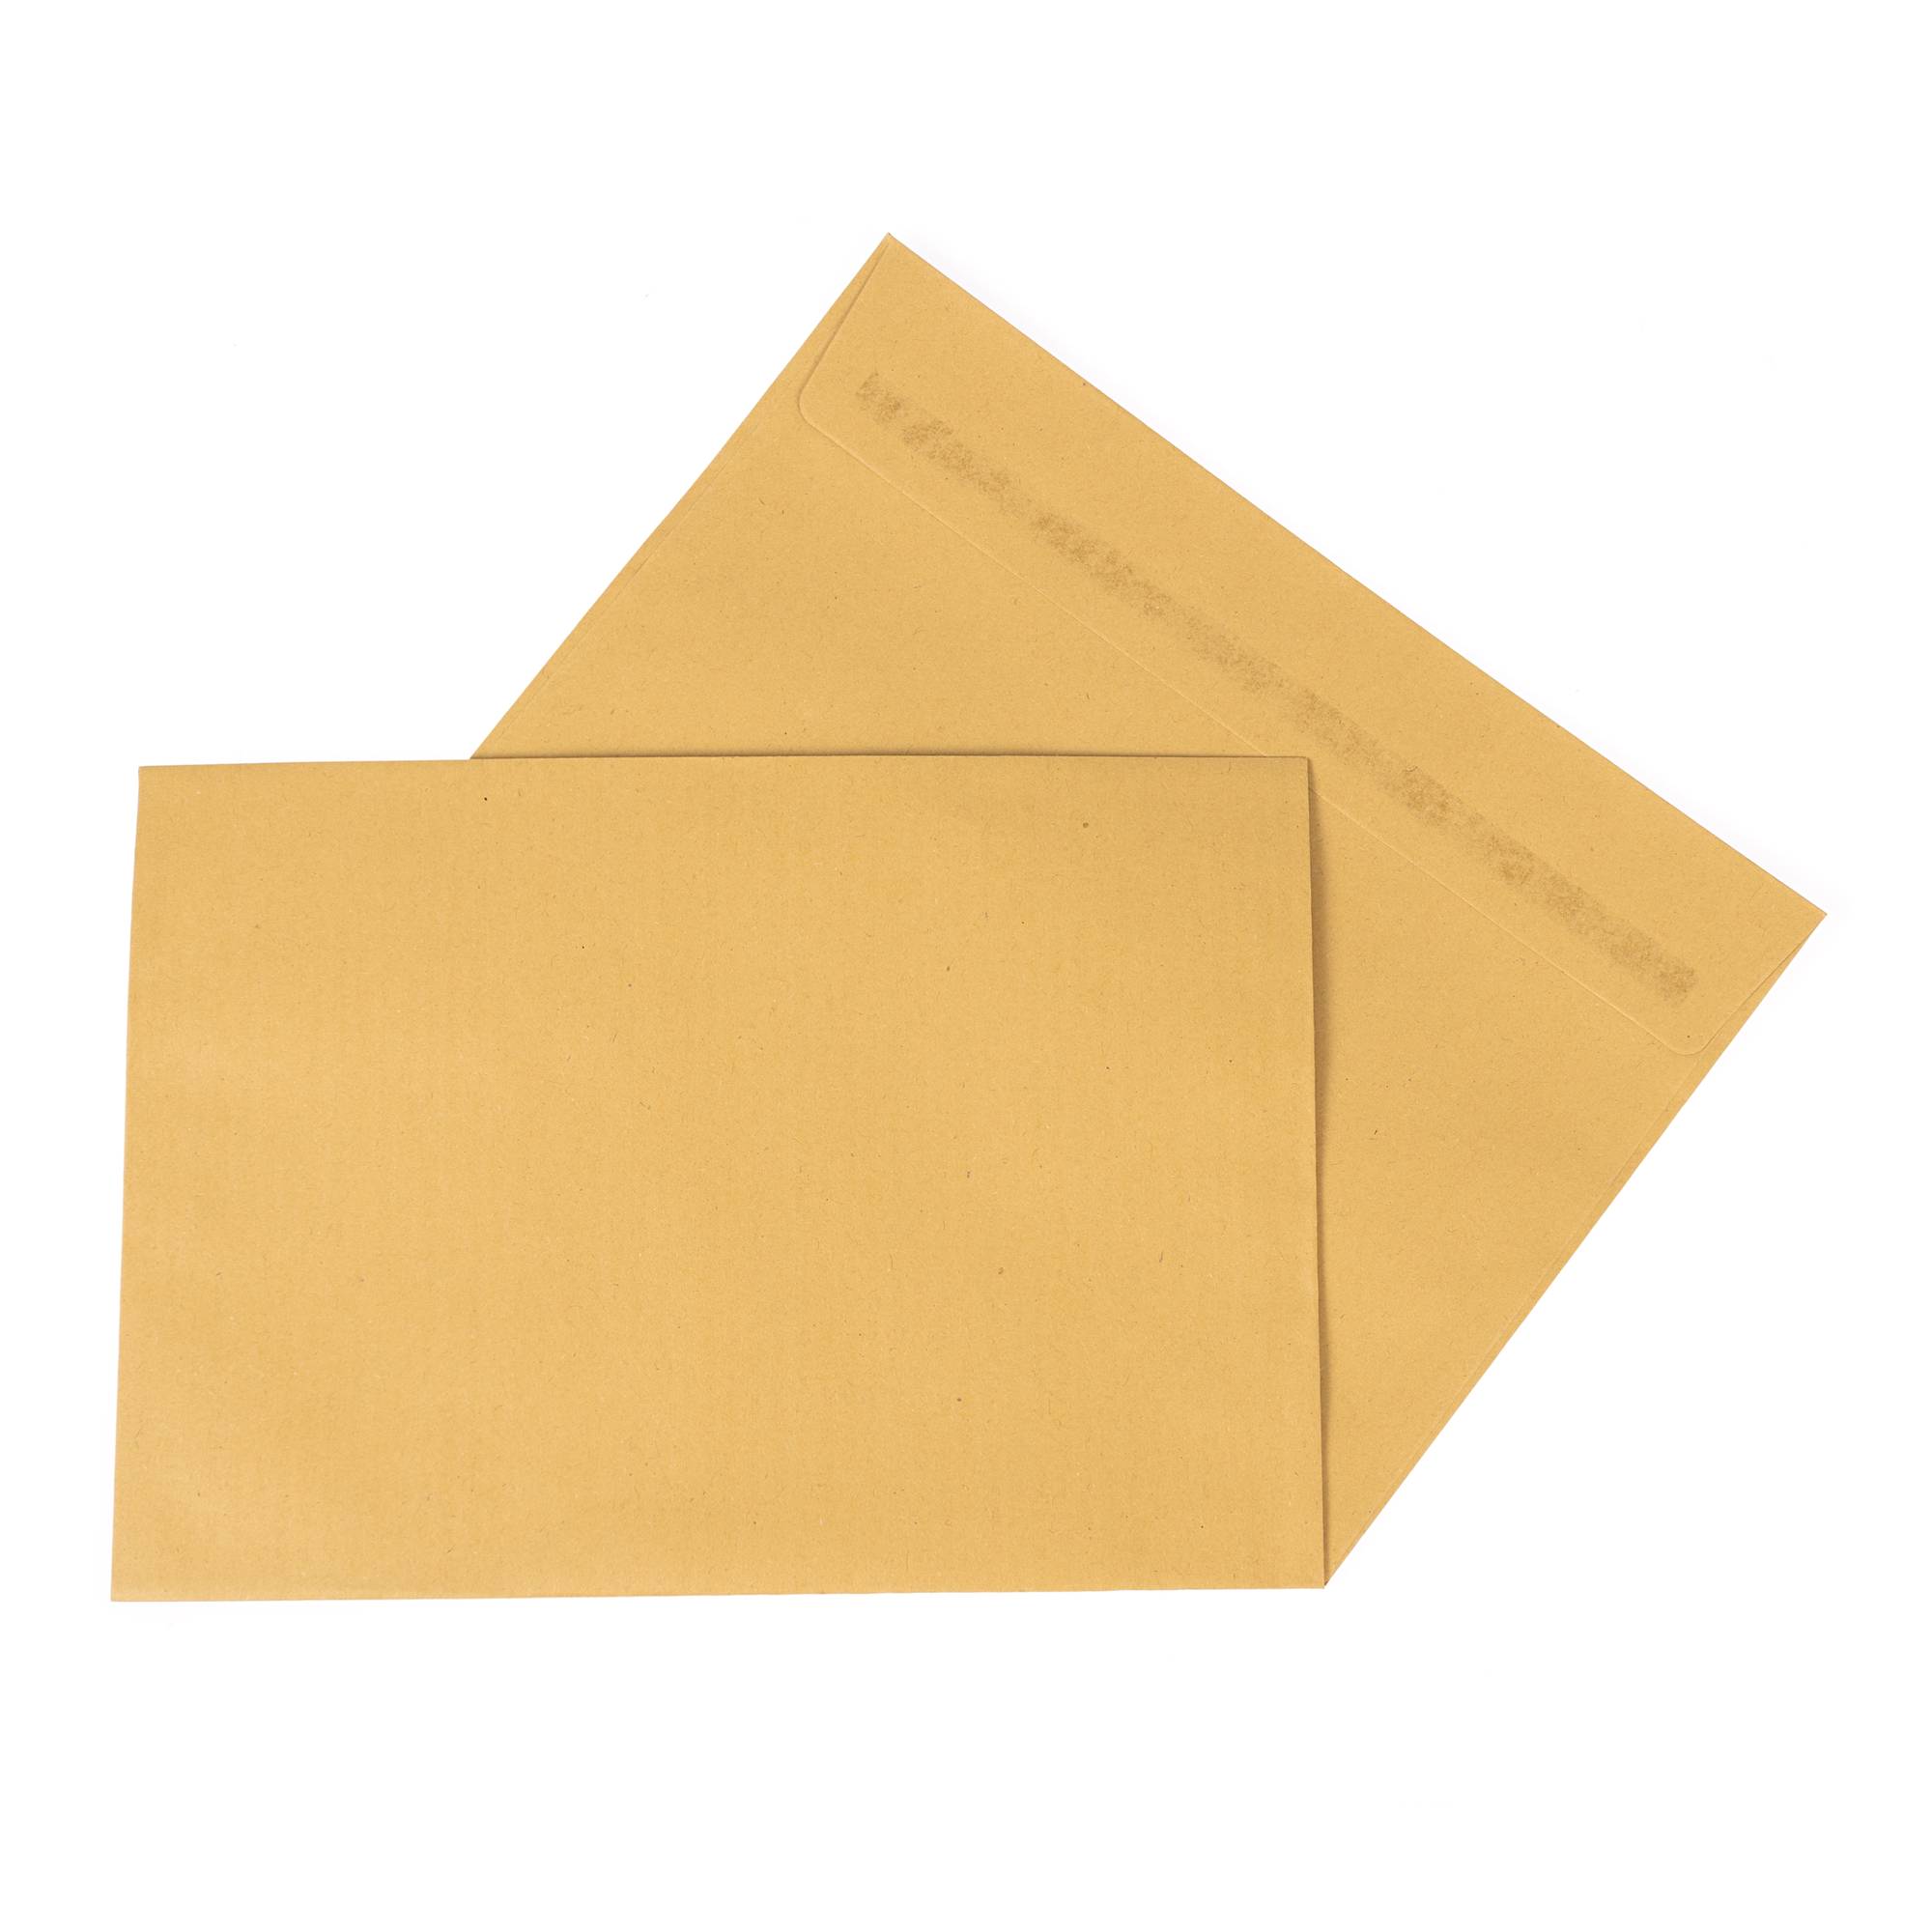 C5 Manilla Envelopes 30 Pack